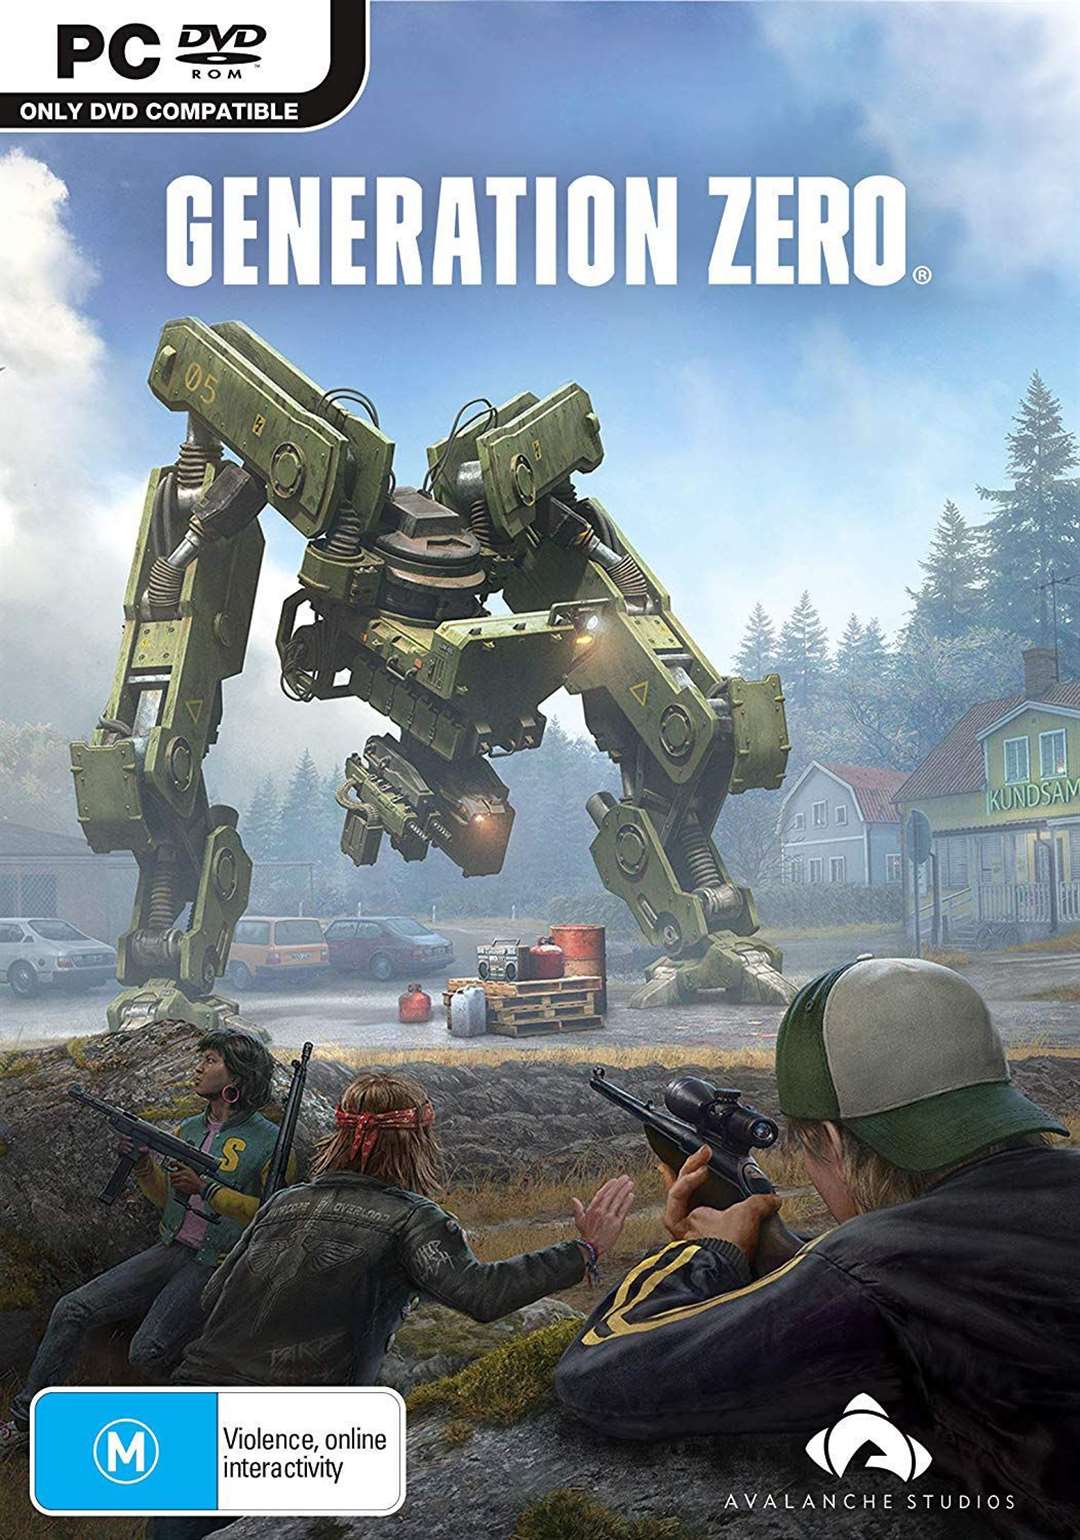 Generation Zero. Picture: Handout/PA